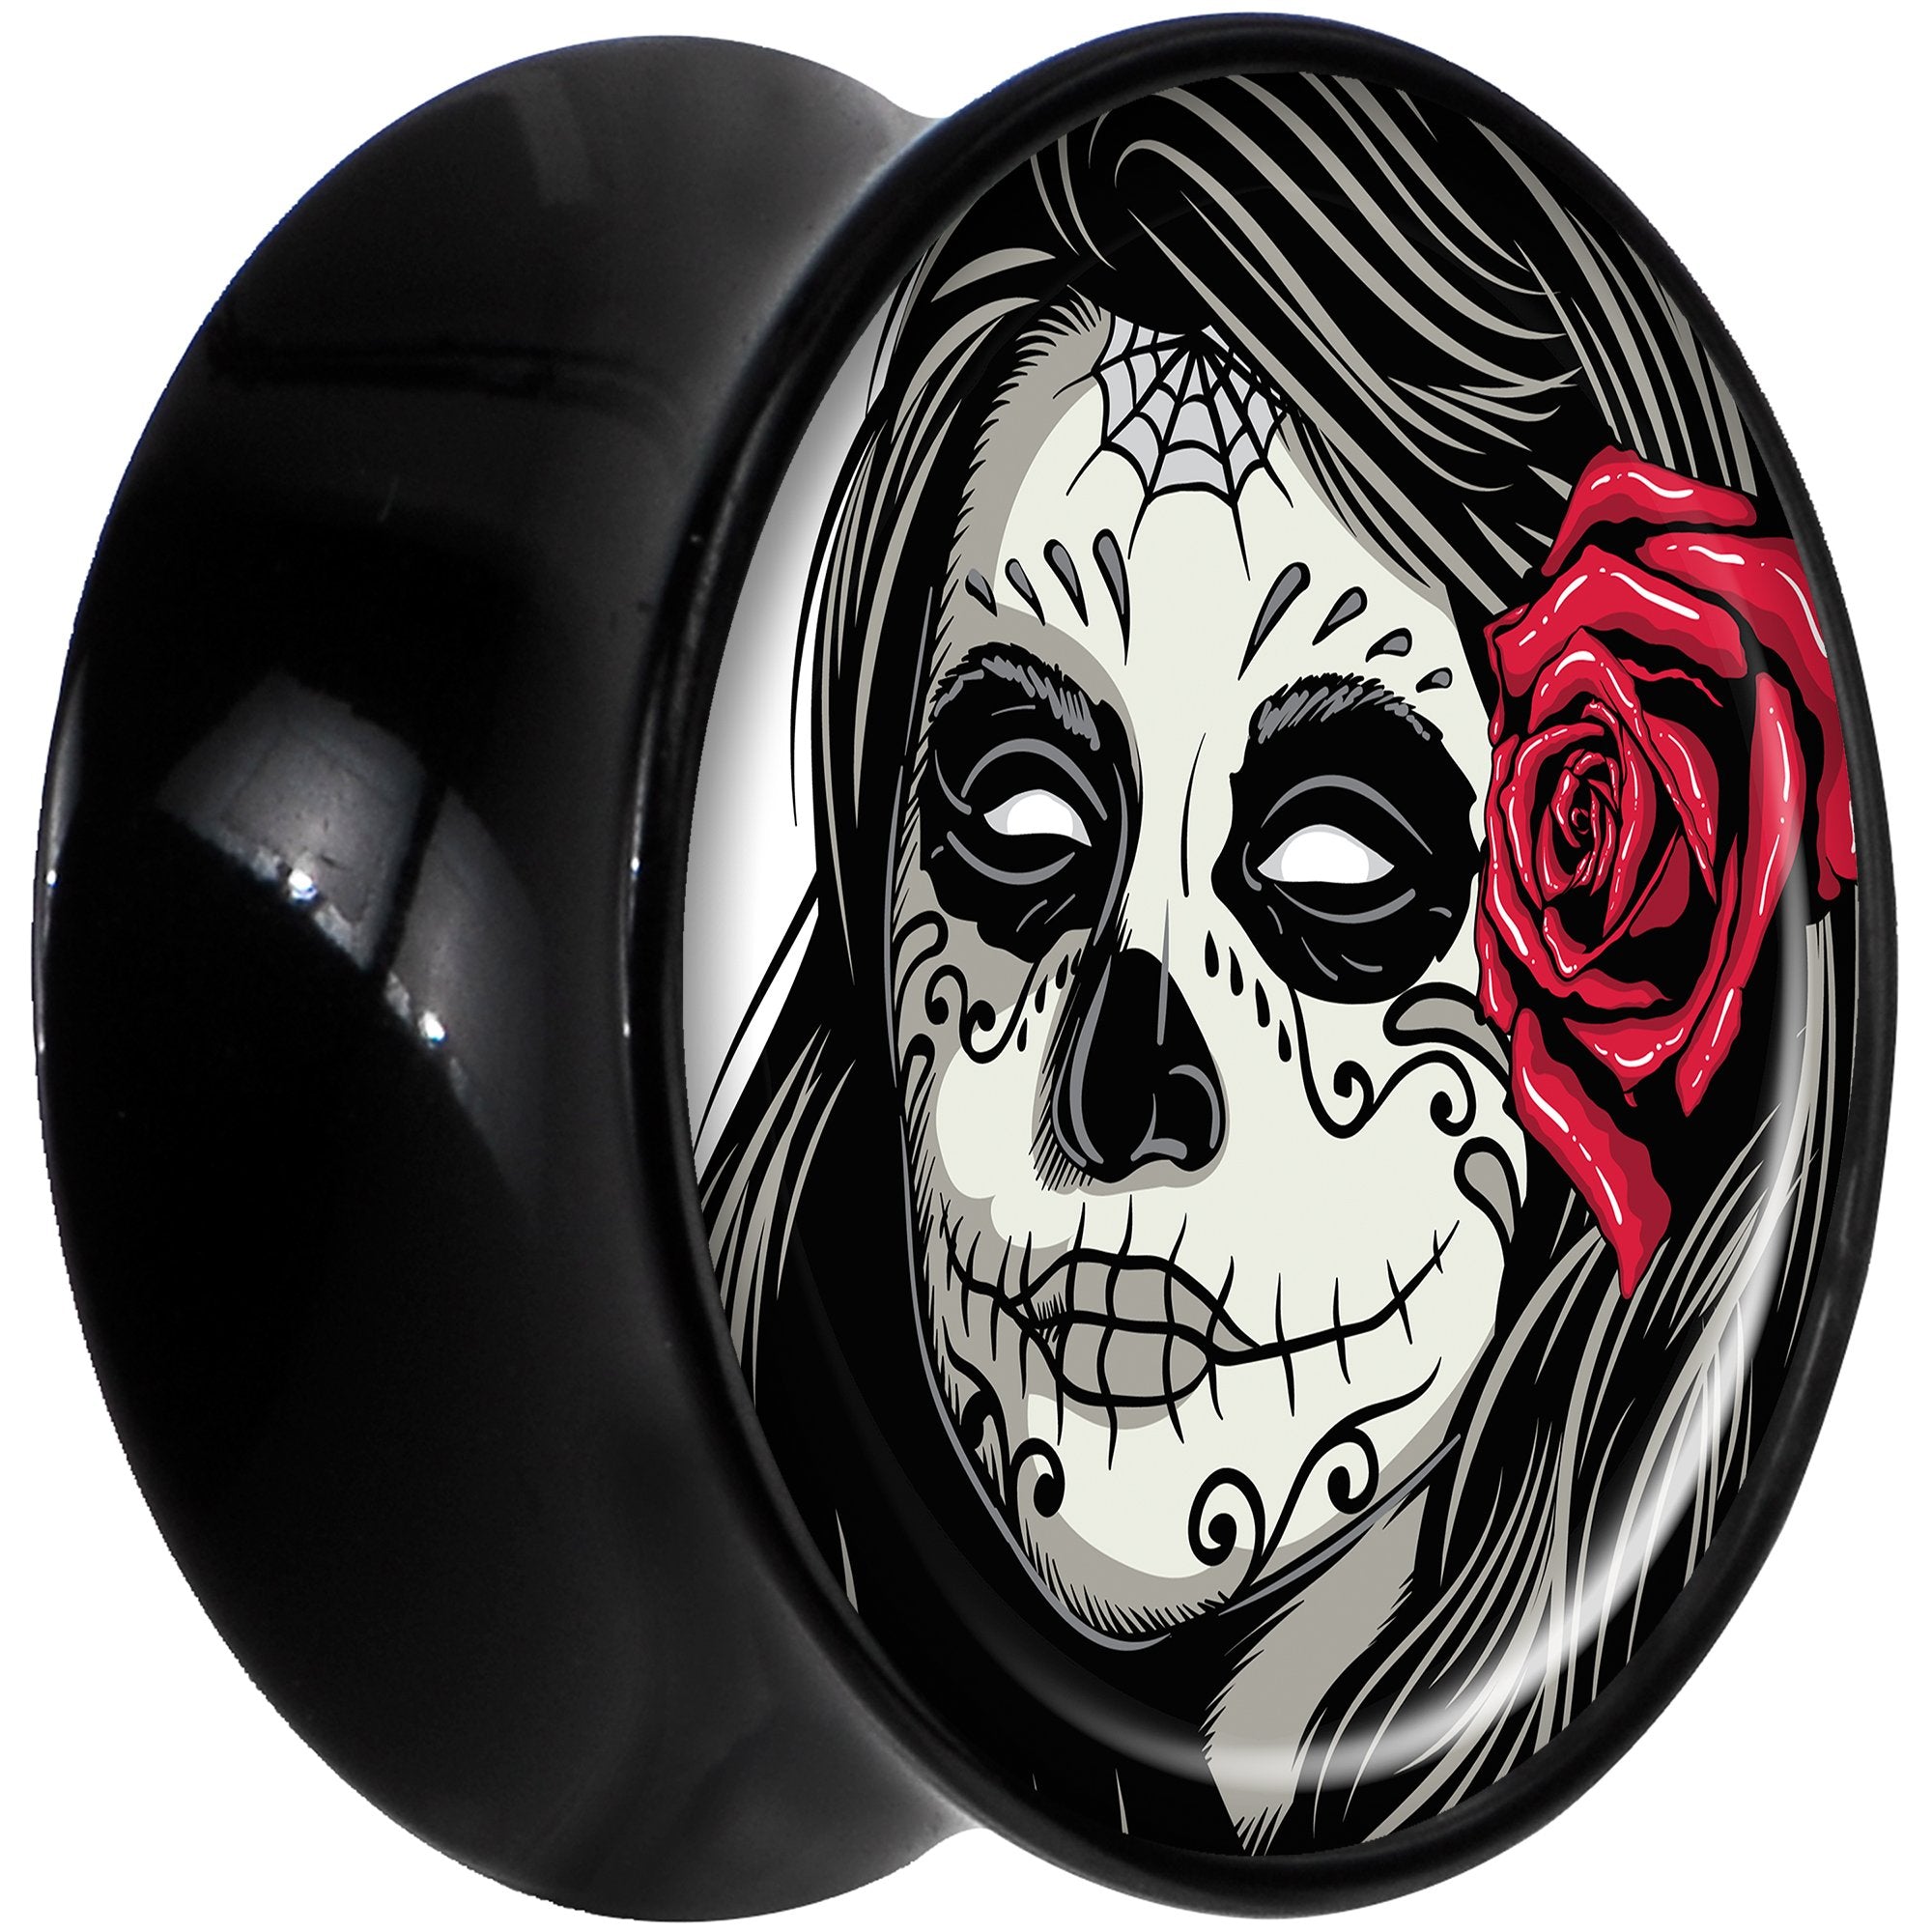 Black Acrylic Katrina Sugar Skull with Rose Flower Saddle Plug Set 5/8